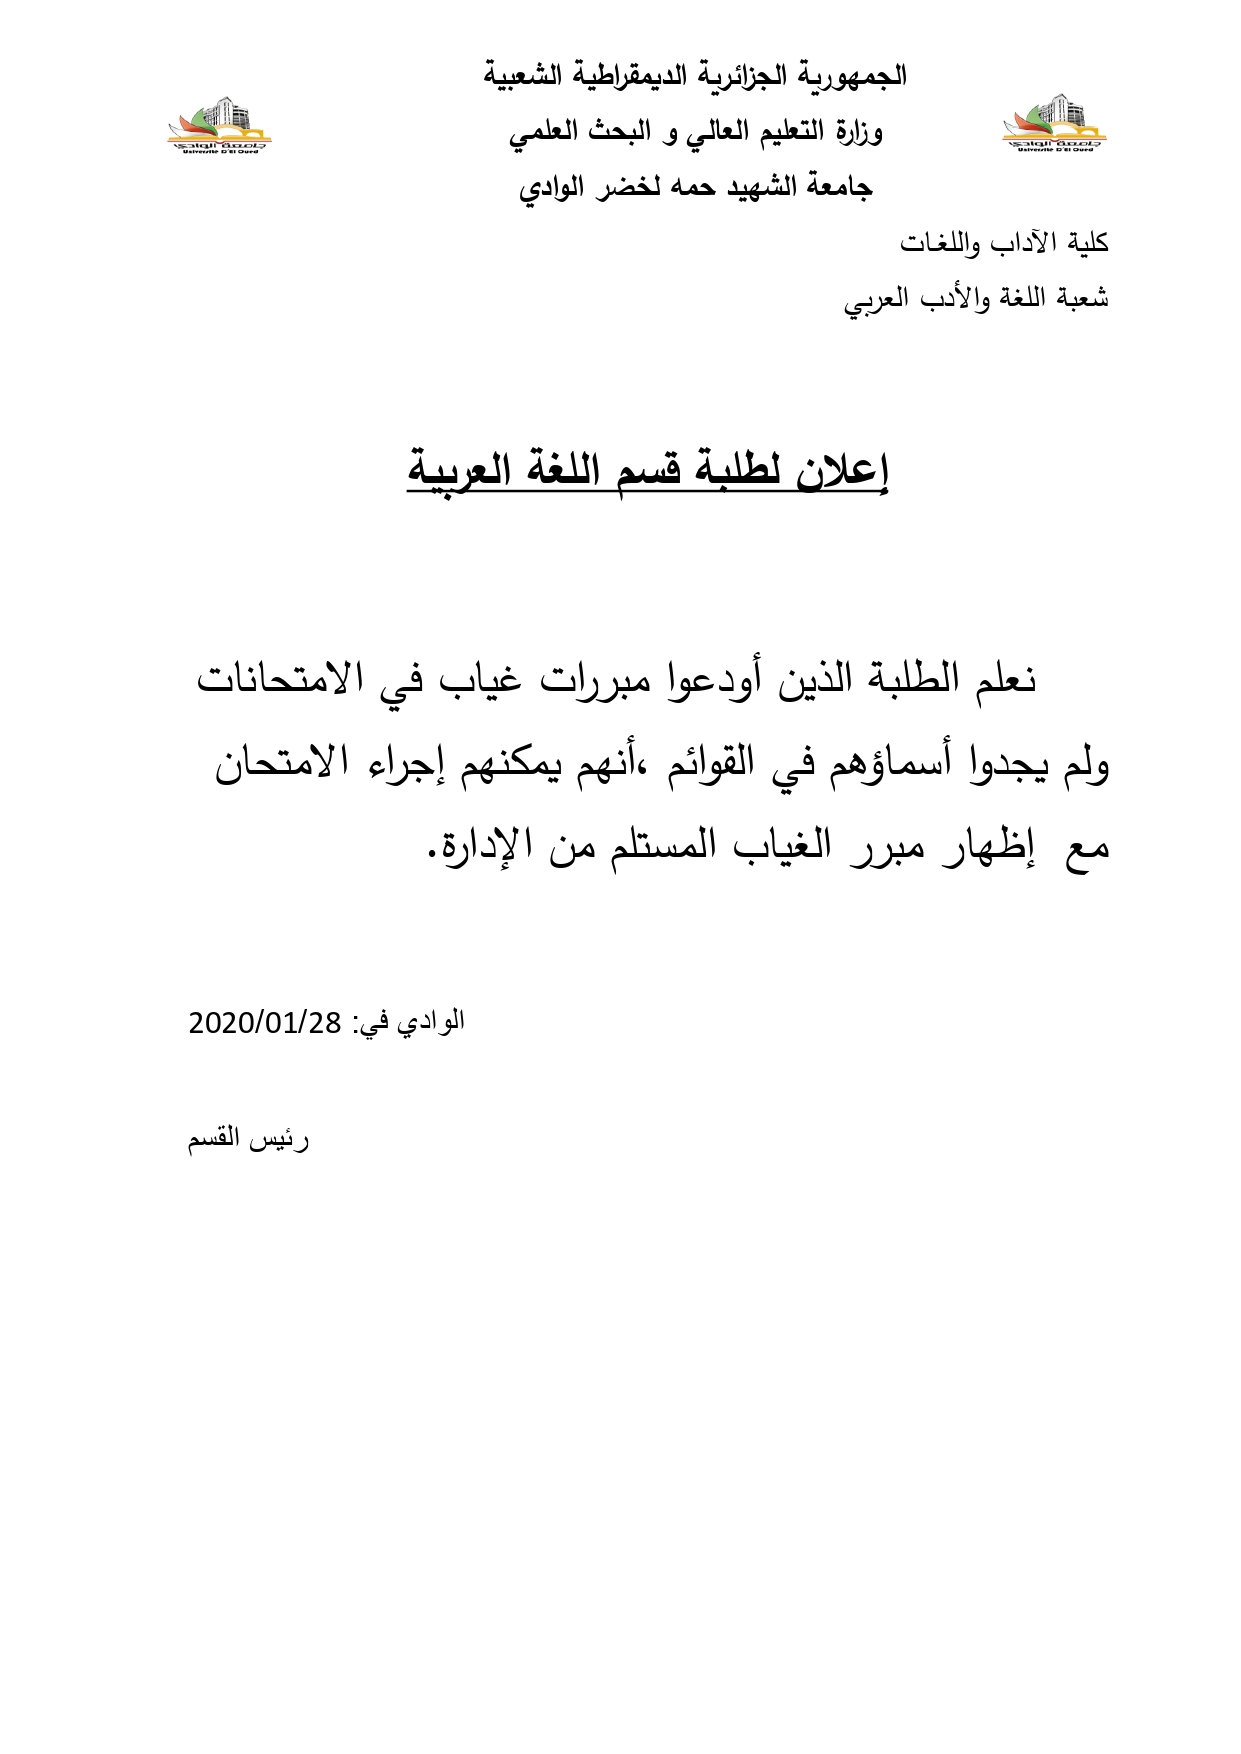 إعلان لطلبة قسم اللغة العربية_page-0001.jpg - 207.94 kB